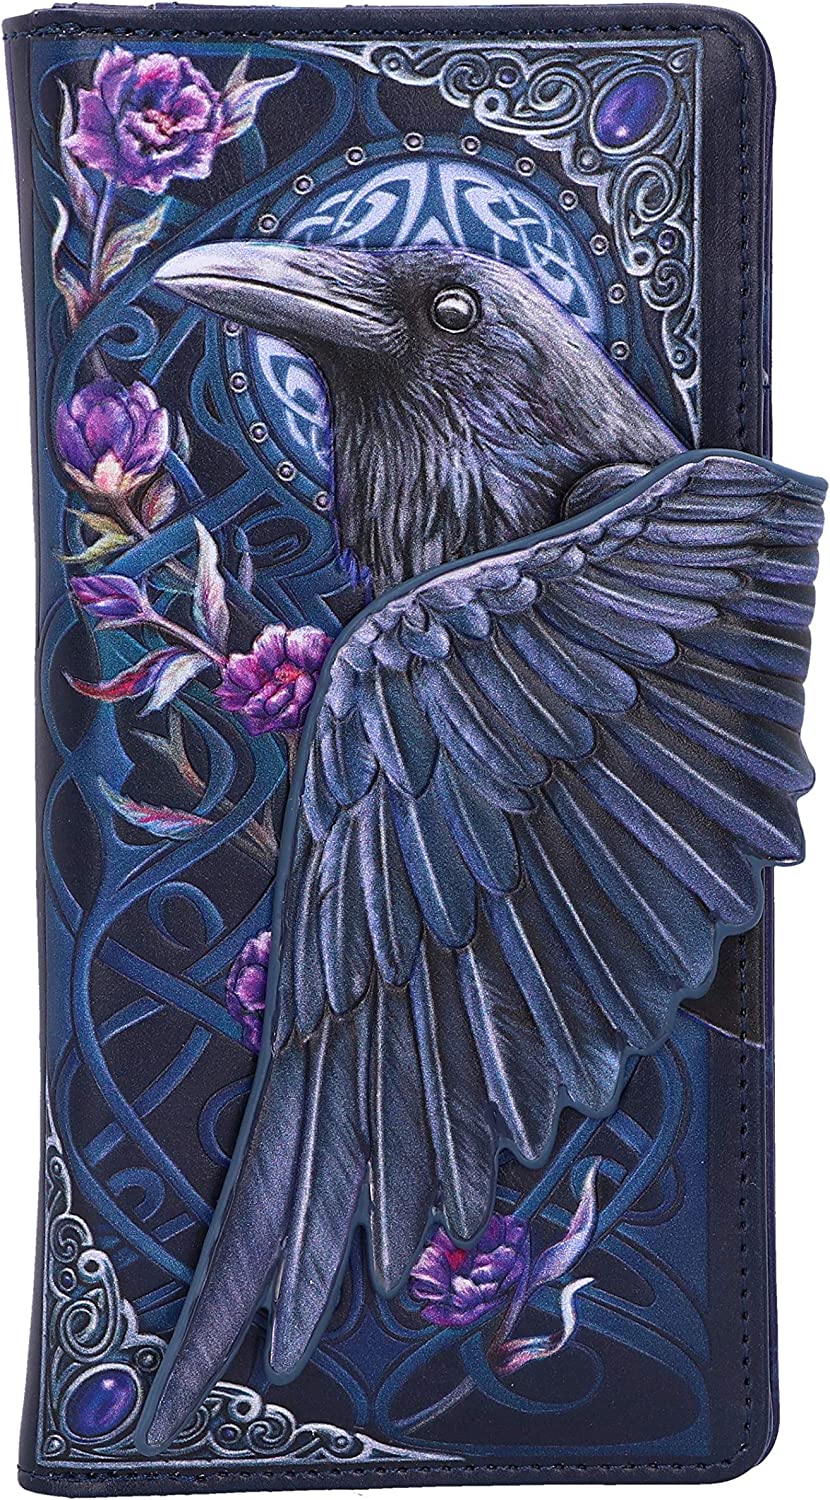 Nemesis Now Ravens Flight Black Wing Geldbörse mit Blumenprägung, Polyurethan,